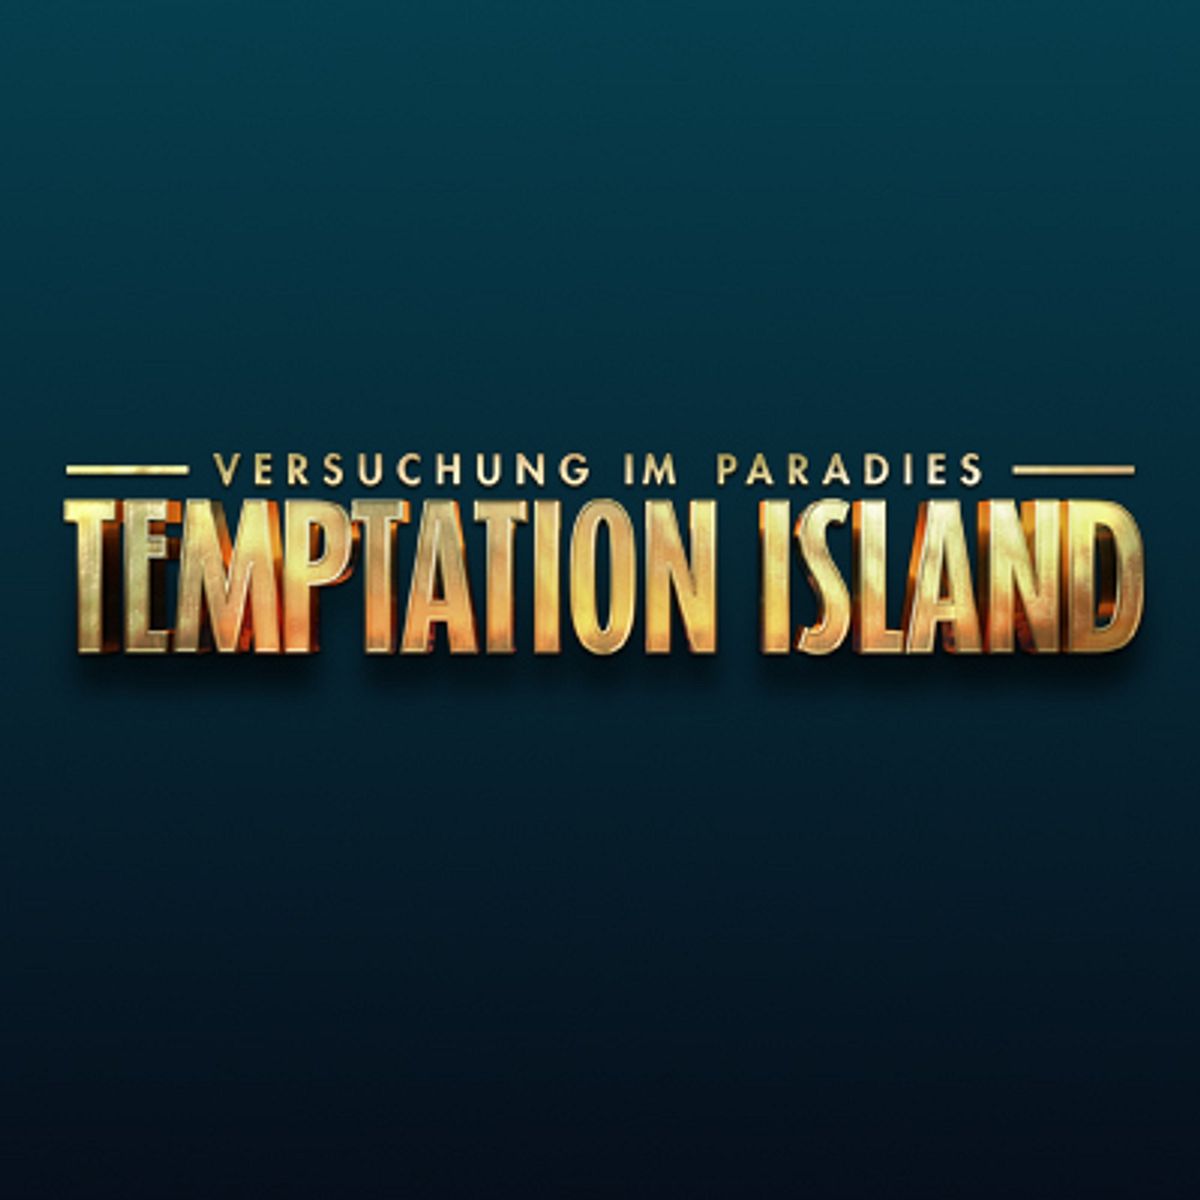 Bei den Tempation Island-Teilnehmern geht es auch abseits der TV-Show heiß her